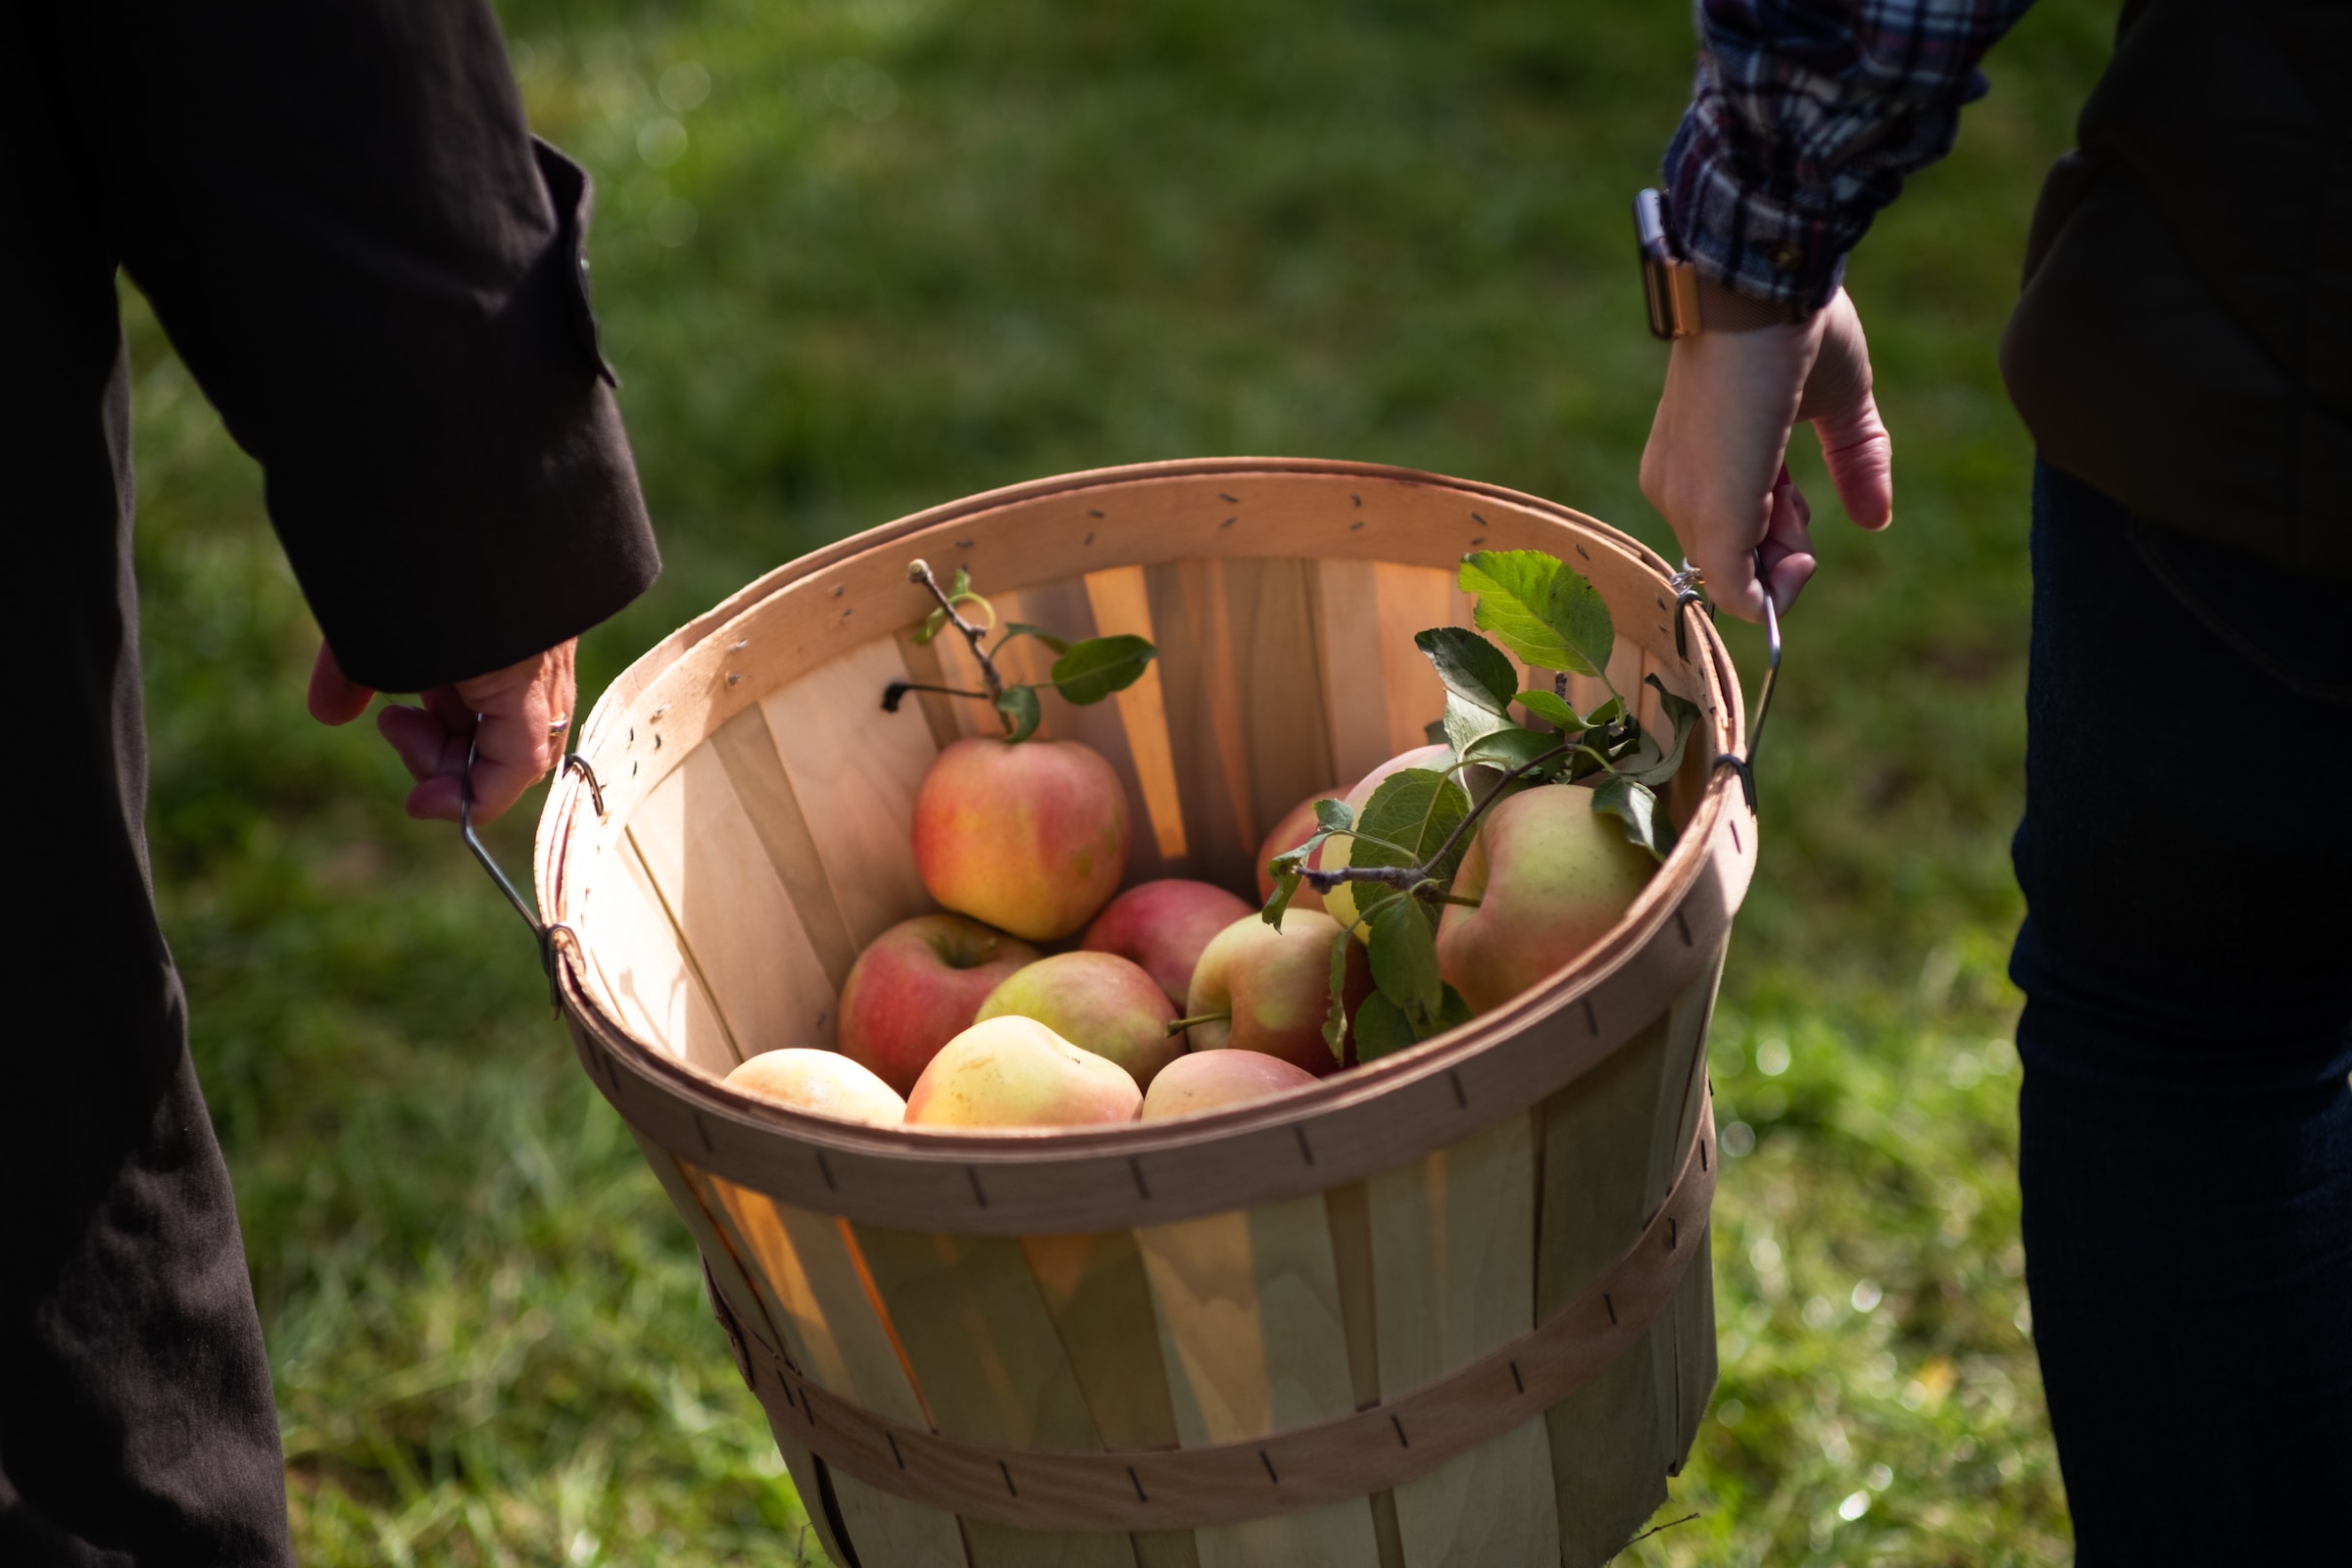 Read more about the article Fænomenet bag cox orange æblets farve